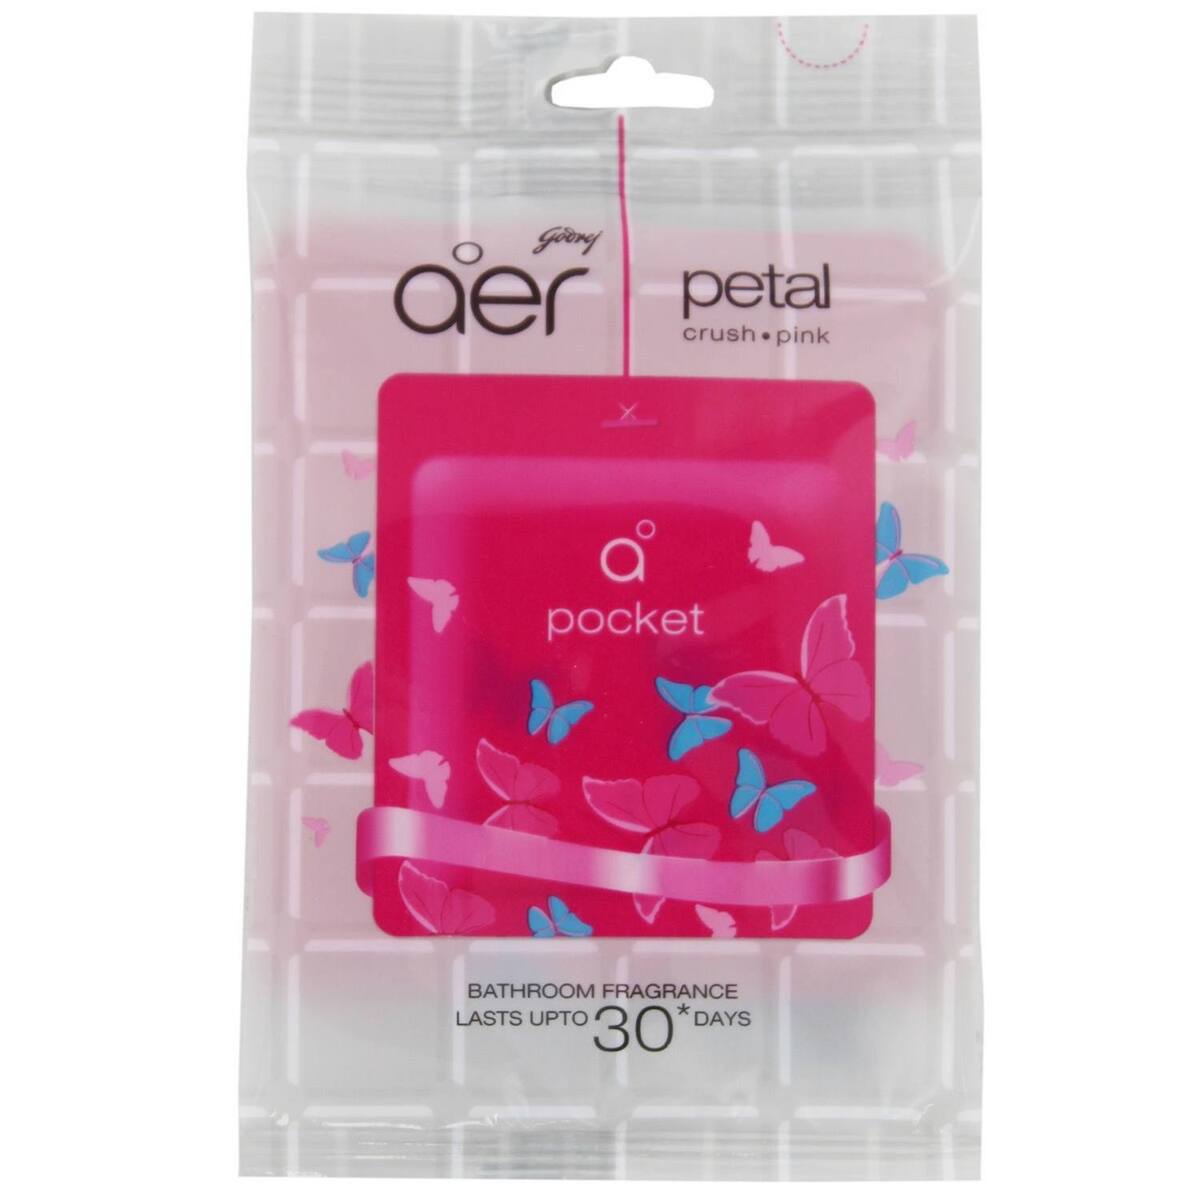 Aer Pocket Bathroom Fragrance Petal Crush Pink 10g